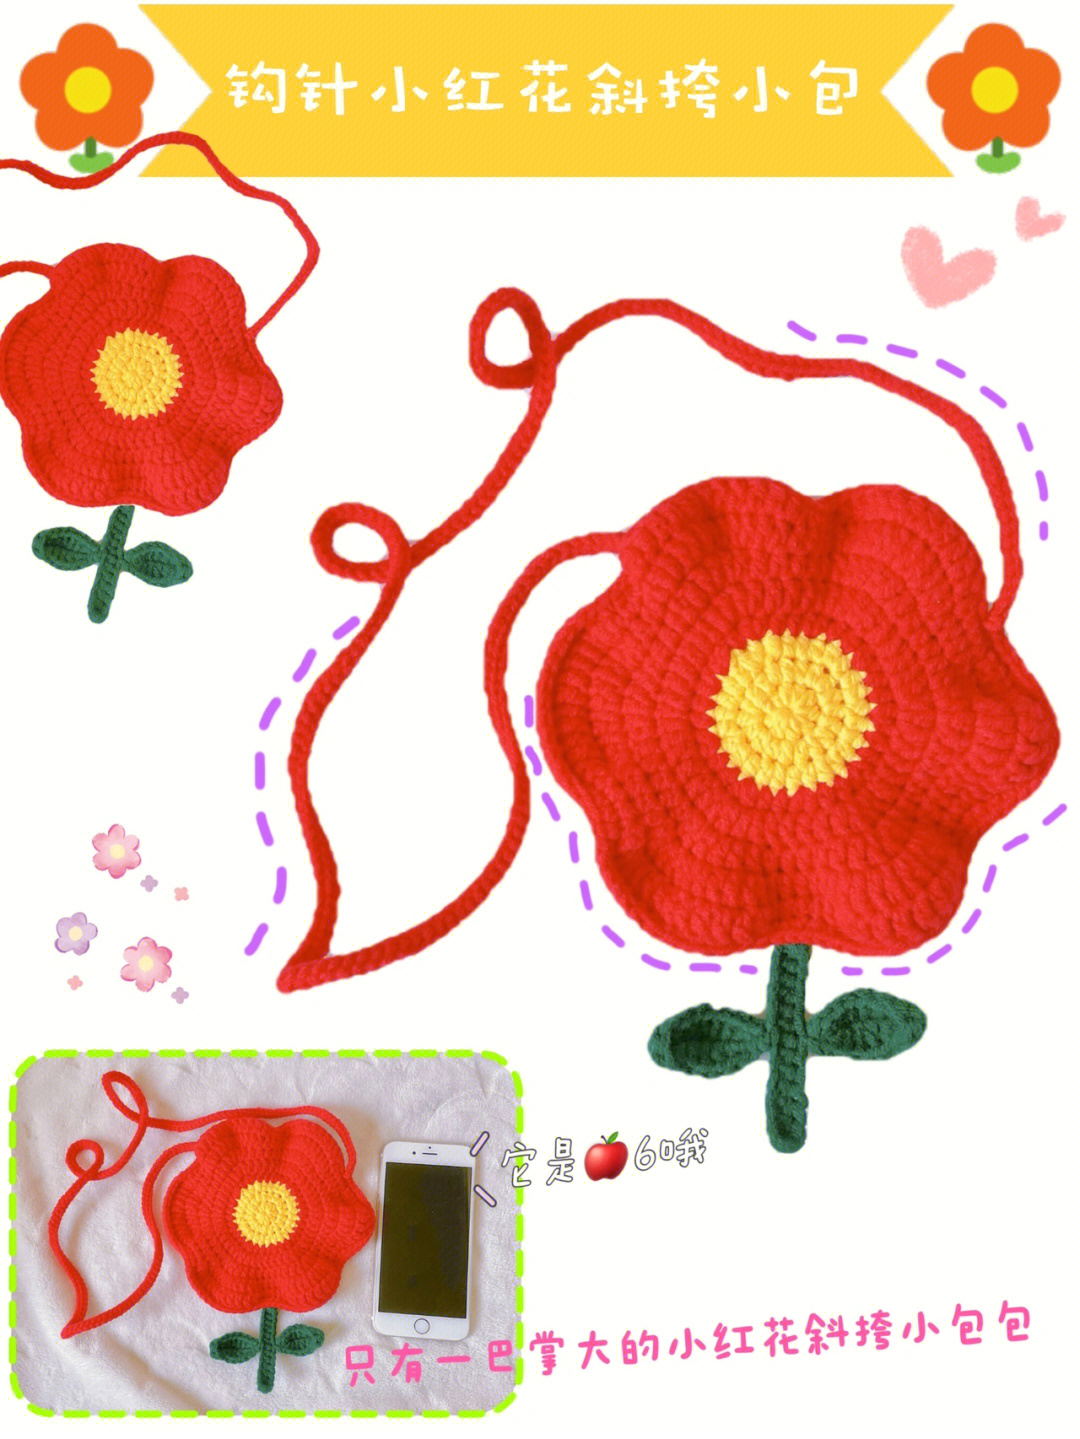 针织小红花教程图片